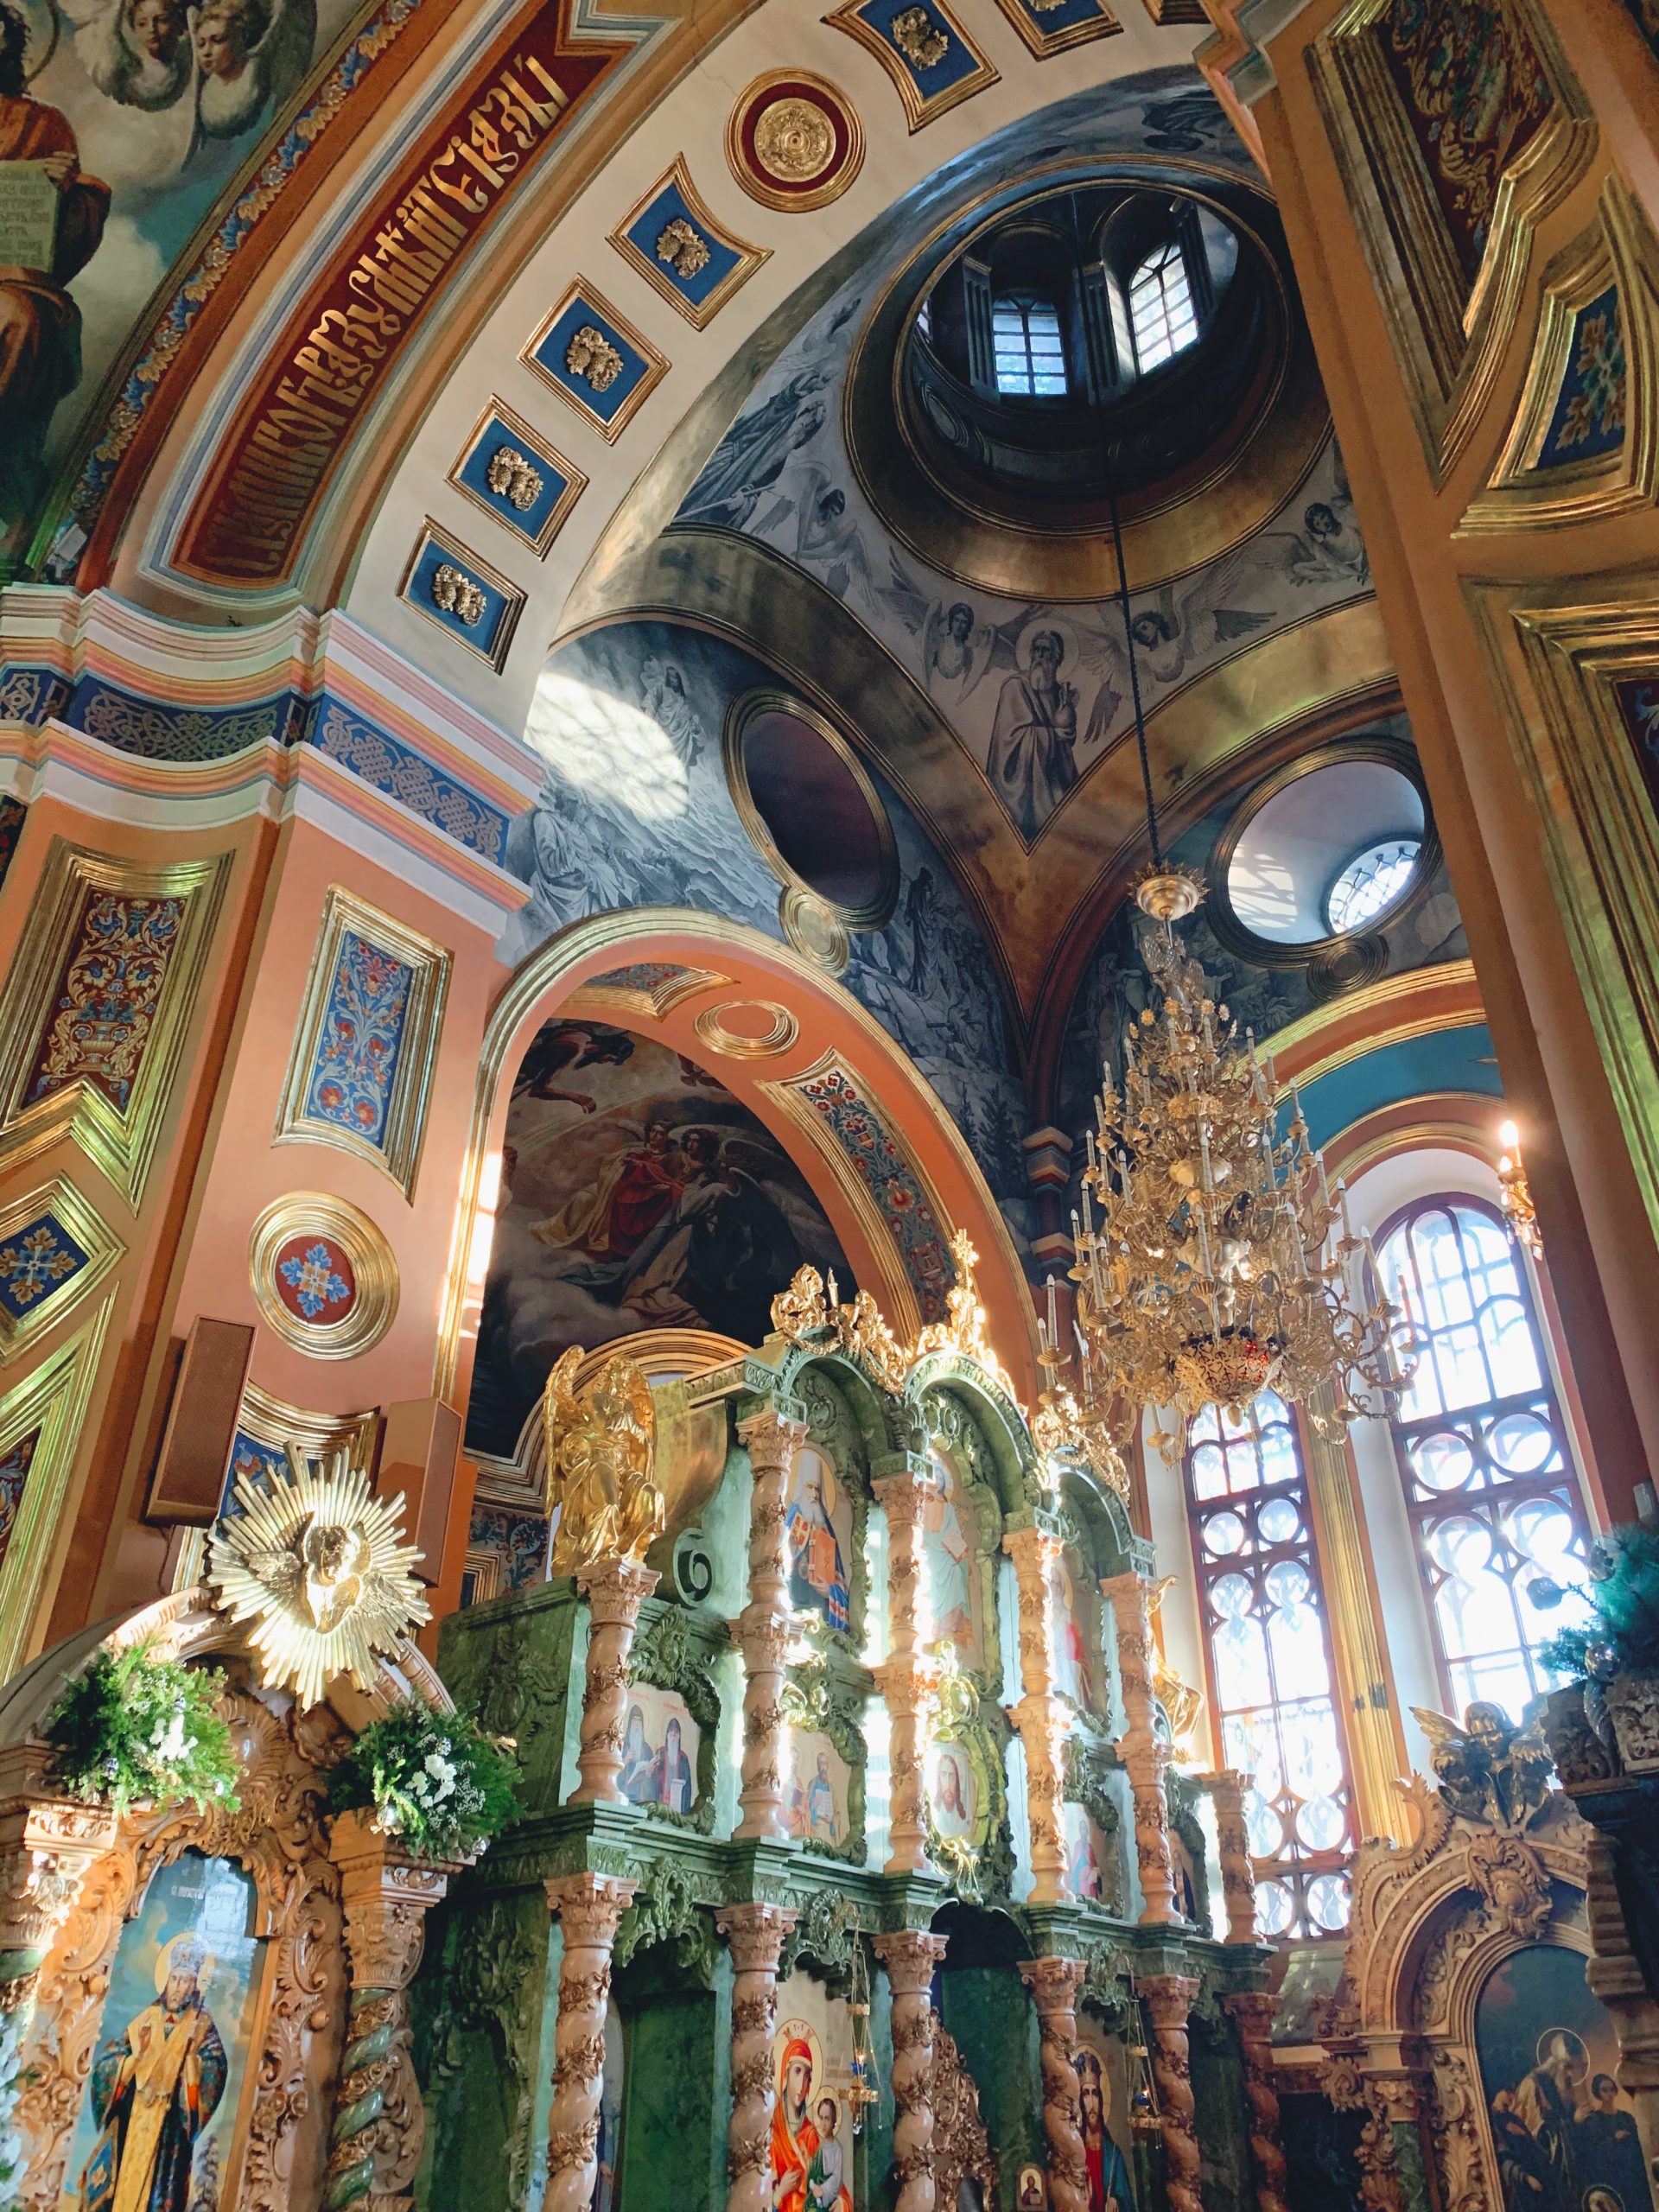 Grand details inside Irkutsk church